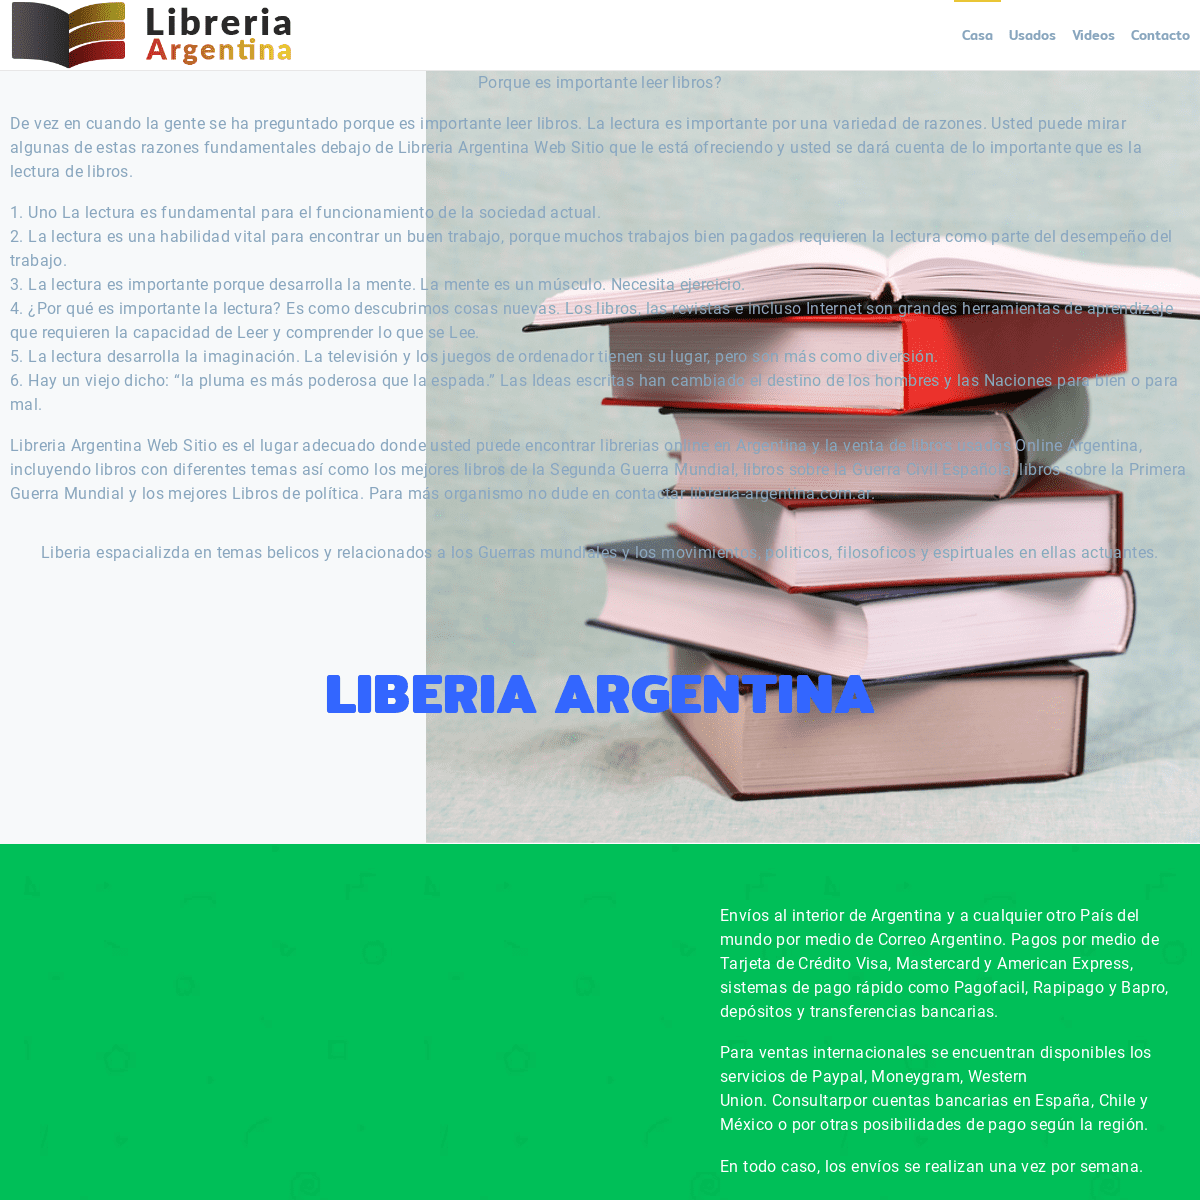 Libreria Argentina Web Sitio | Librerias Online en Argentina